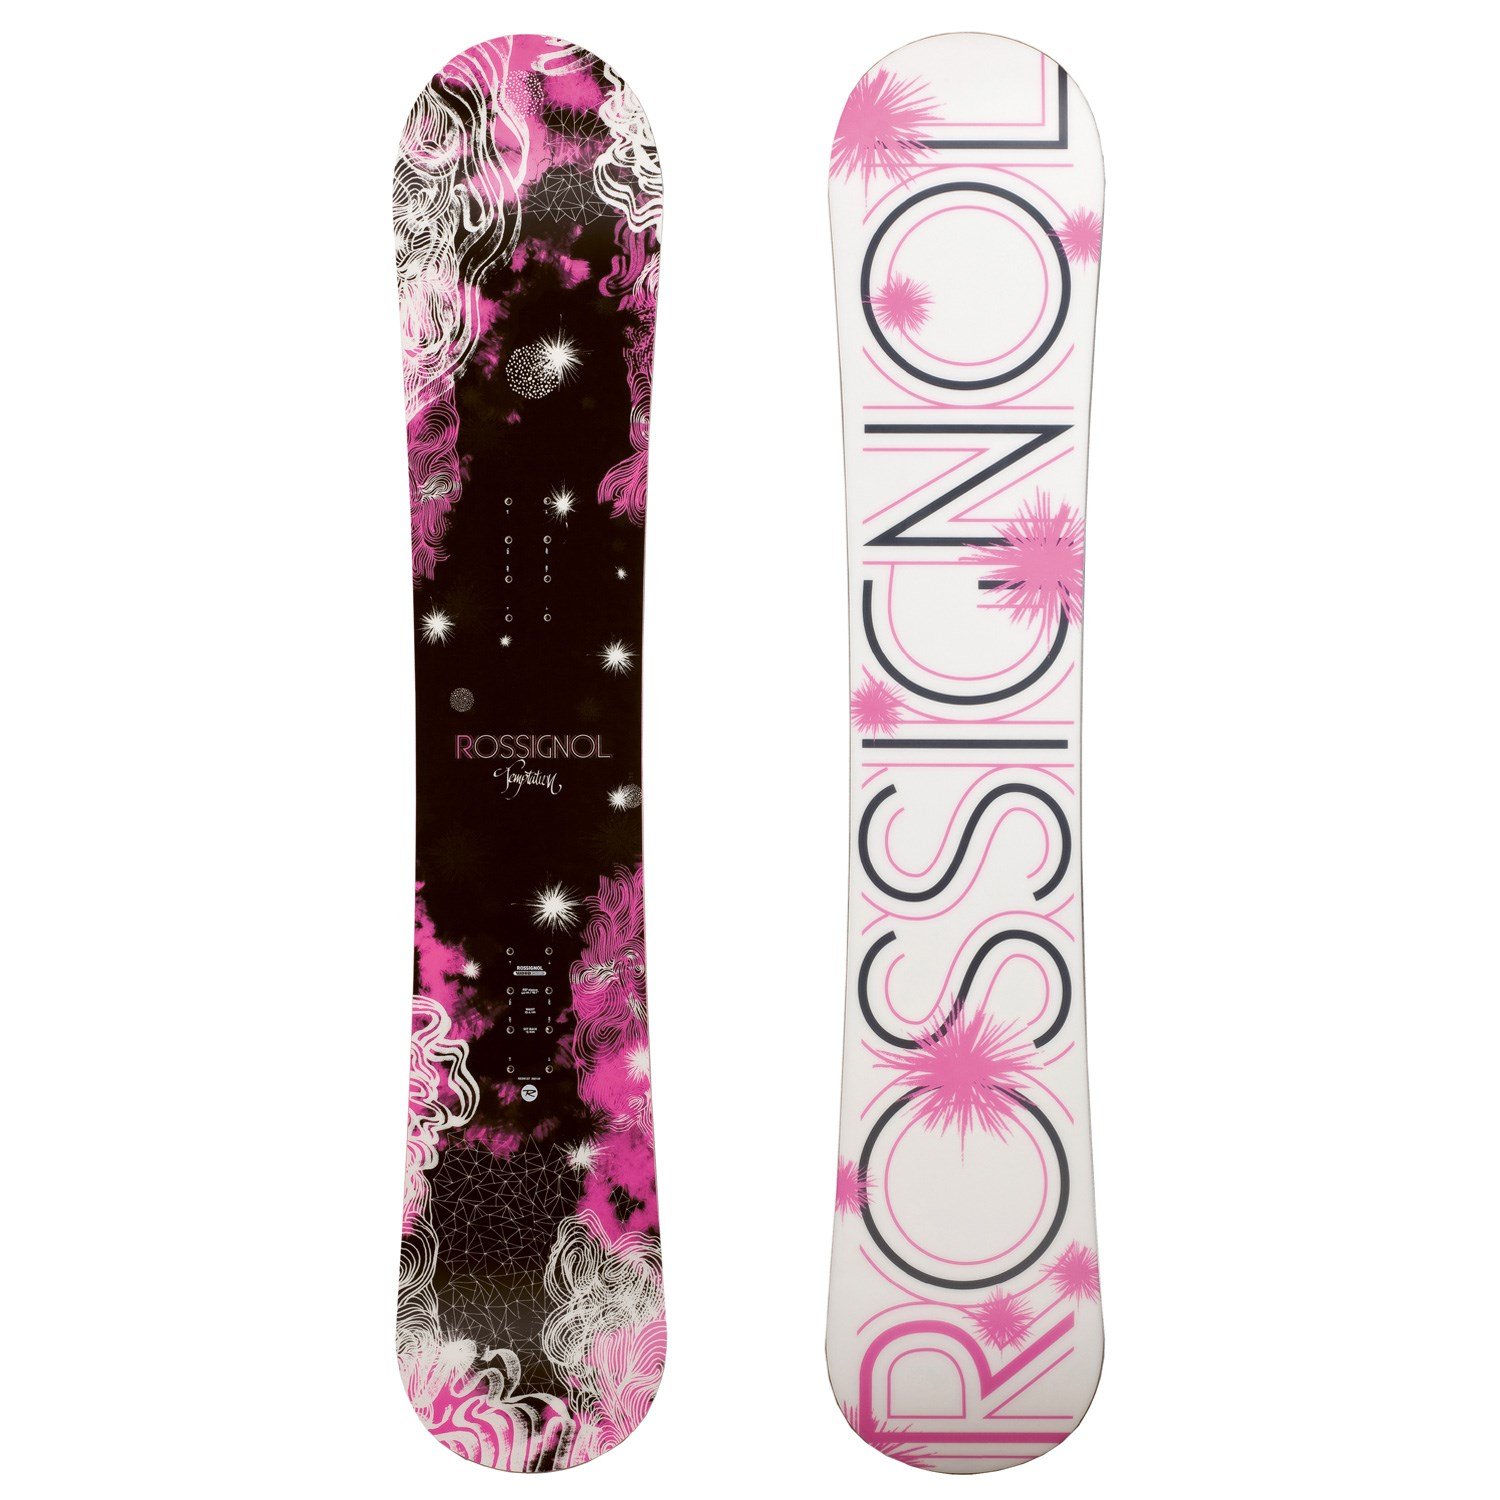 Rossignol Temptation Snowboard - Women's 2011 | evo